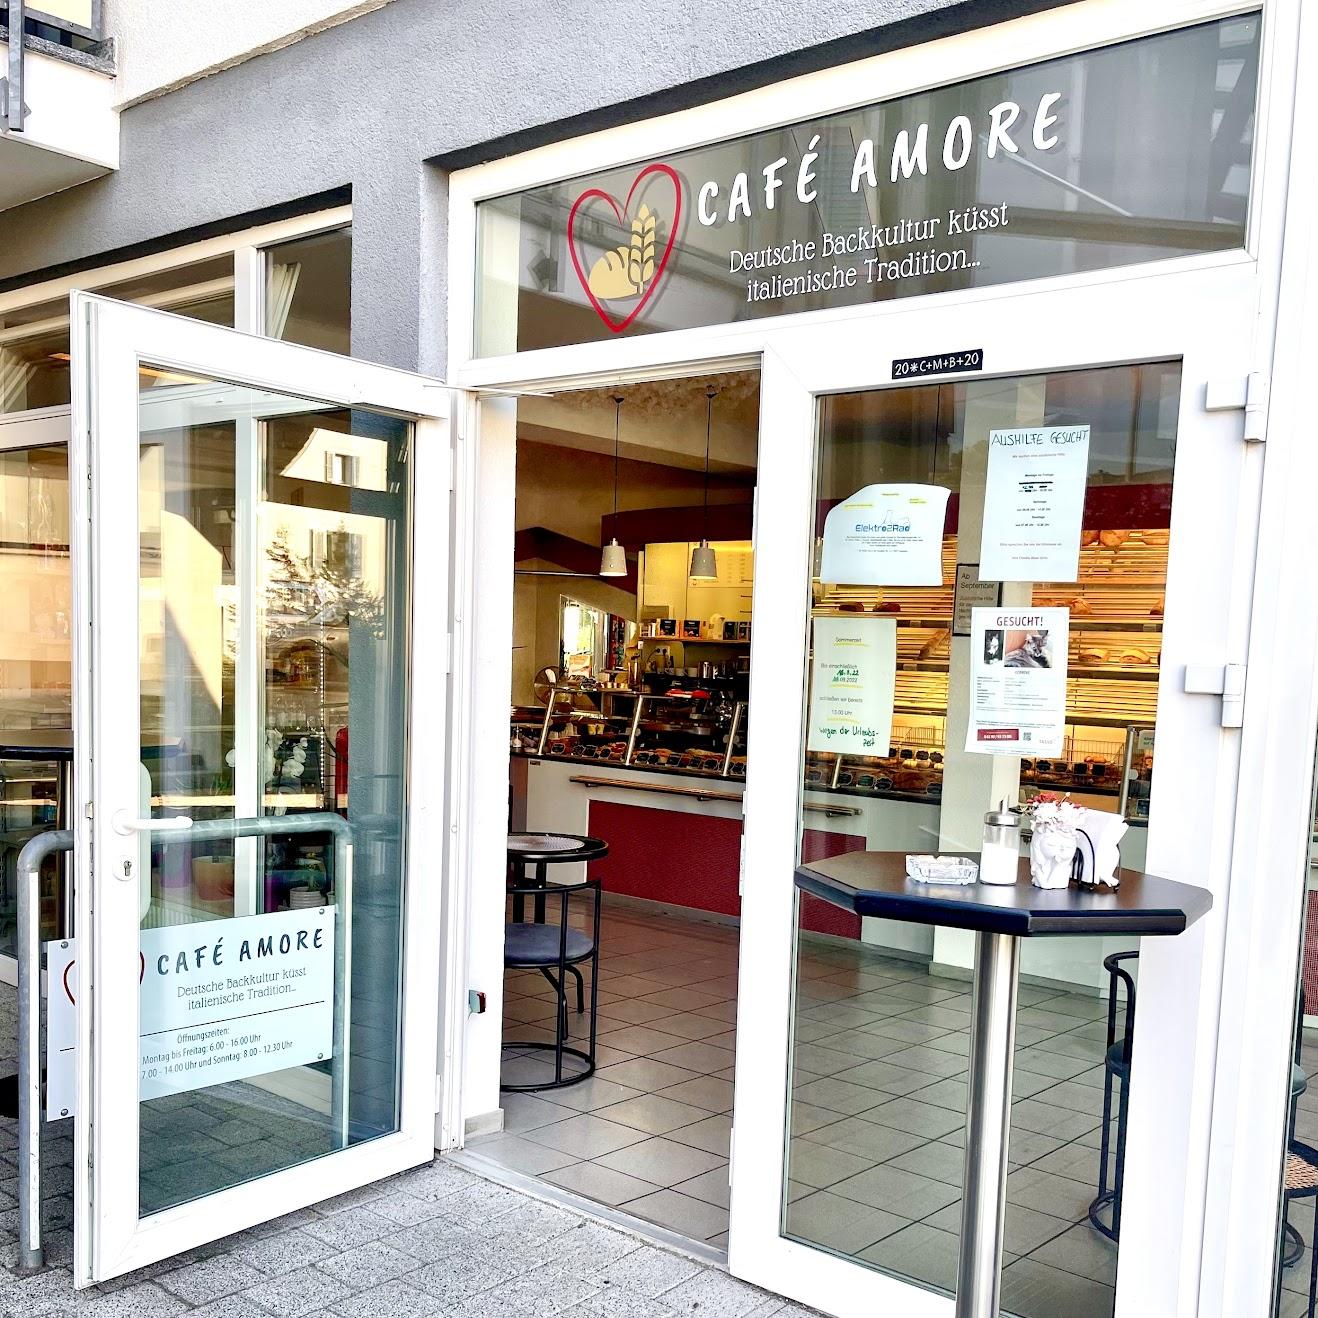 Restaurant "Café Amore (Deutsche Backkultur küsst italienische Tradition…)" in Eschbach